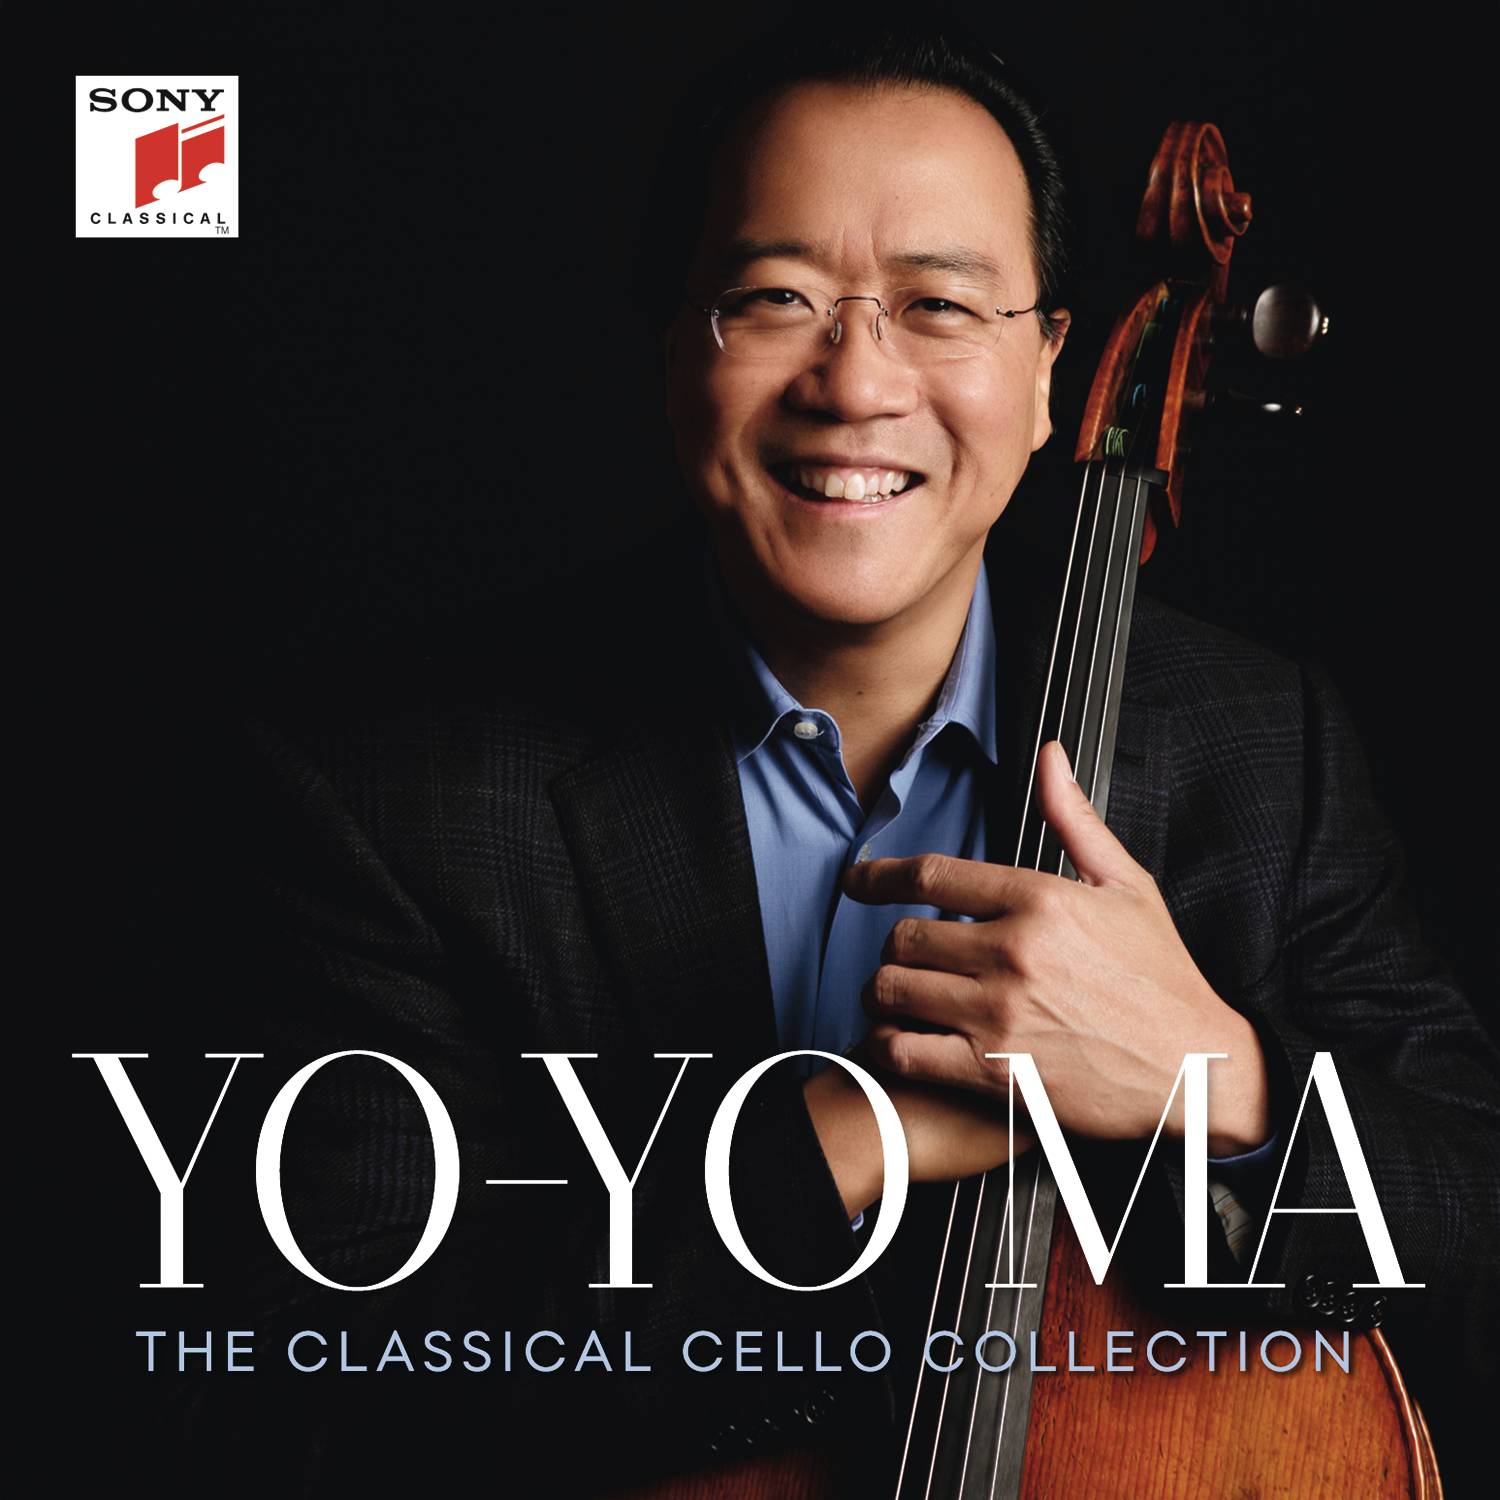 Concerto for Viola and Orchestra (Op. Posth.): II. Adagio religioso